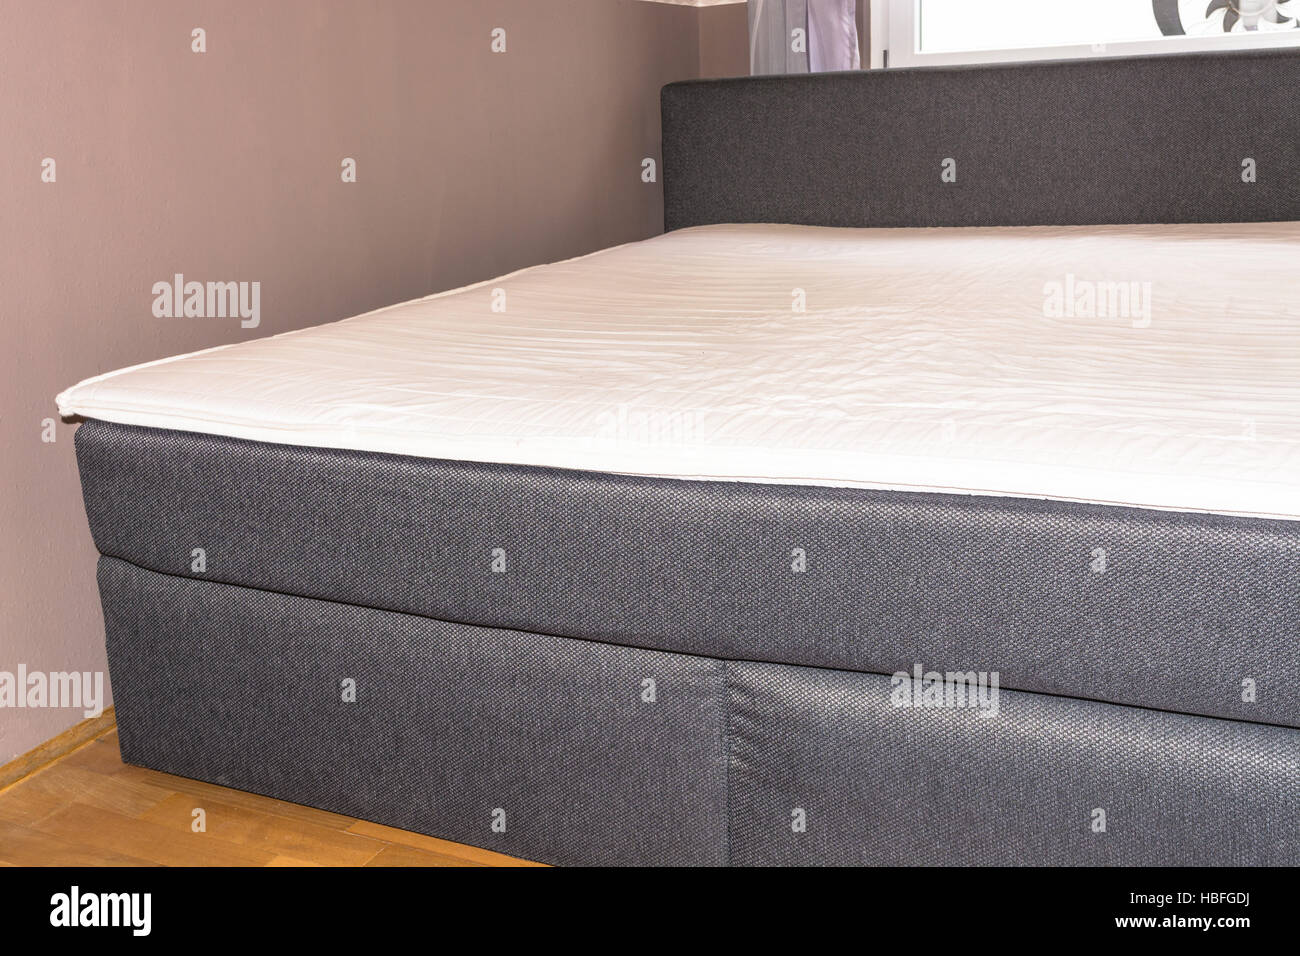 Dettaglio camere da letto con materasso a molla, materassi da letto Foto Stock